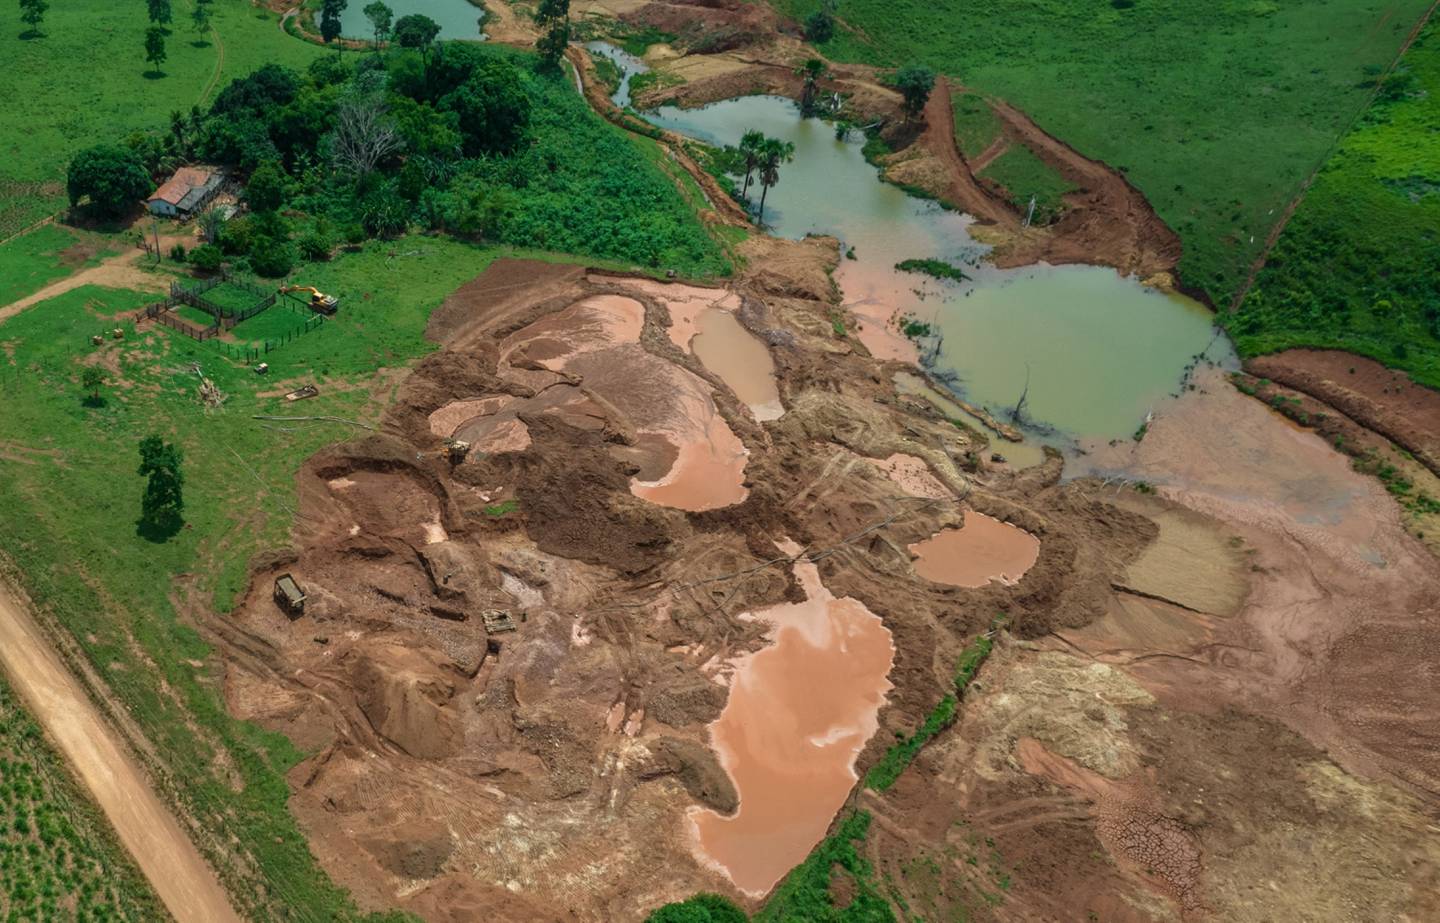 Una mina de exploración mineral cerca de Sao Felix do Xingu, estado de Pará, Brasil, el lunes 4 de octubre de 2021.dfd